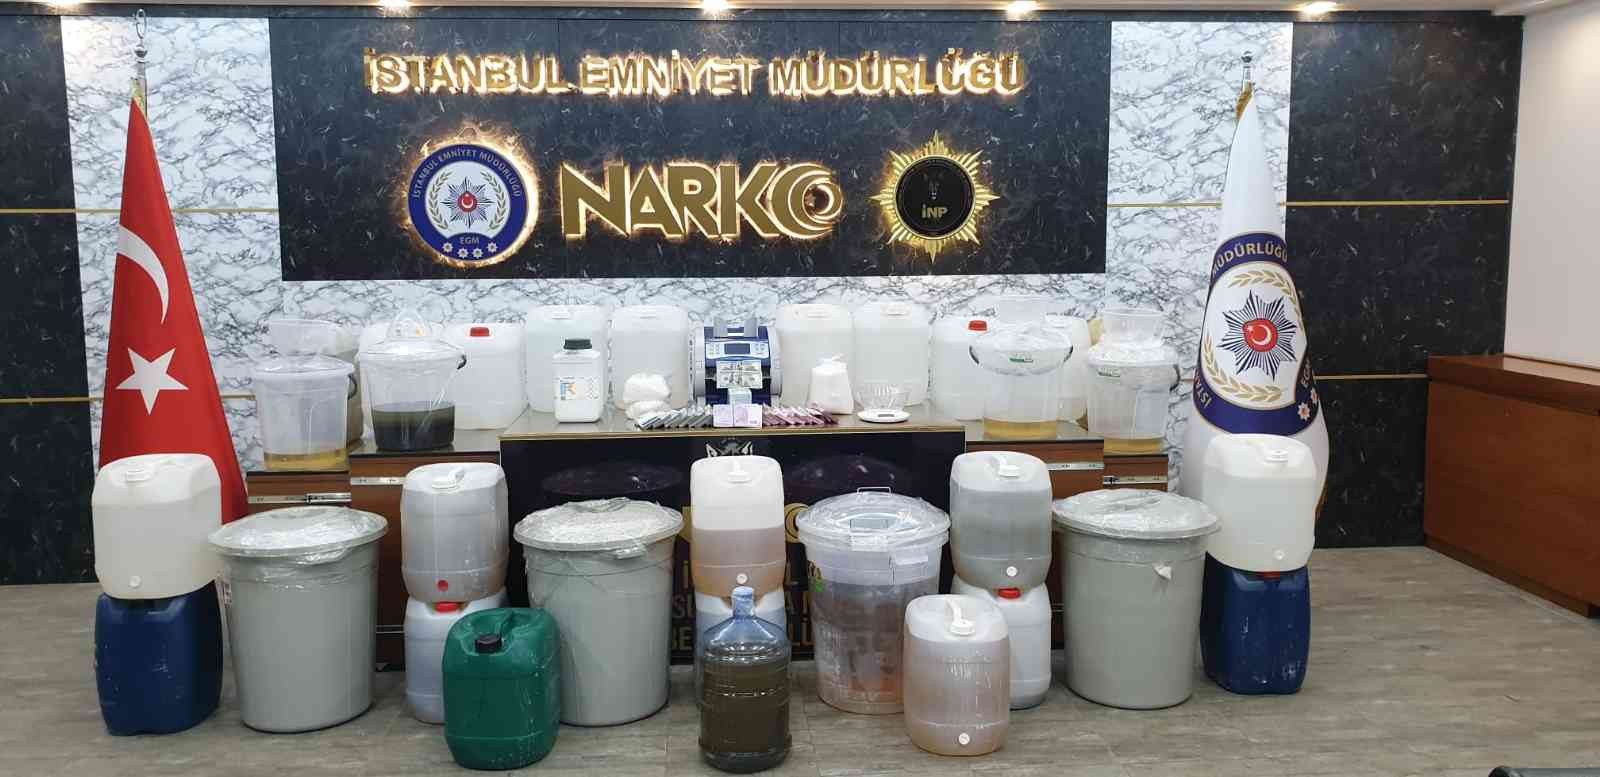 İstanbul’da uyuşturucu operasyonu: Yarım tonun üzerinde metamfetamin ele geçirildi #istanbul